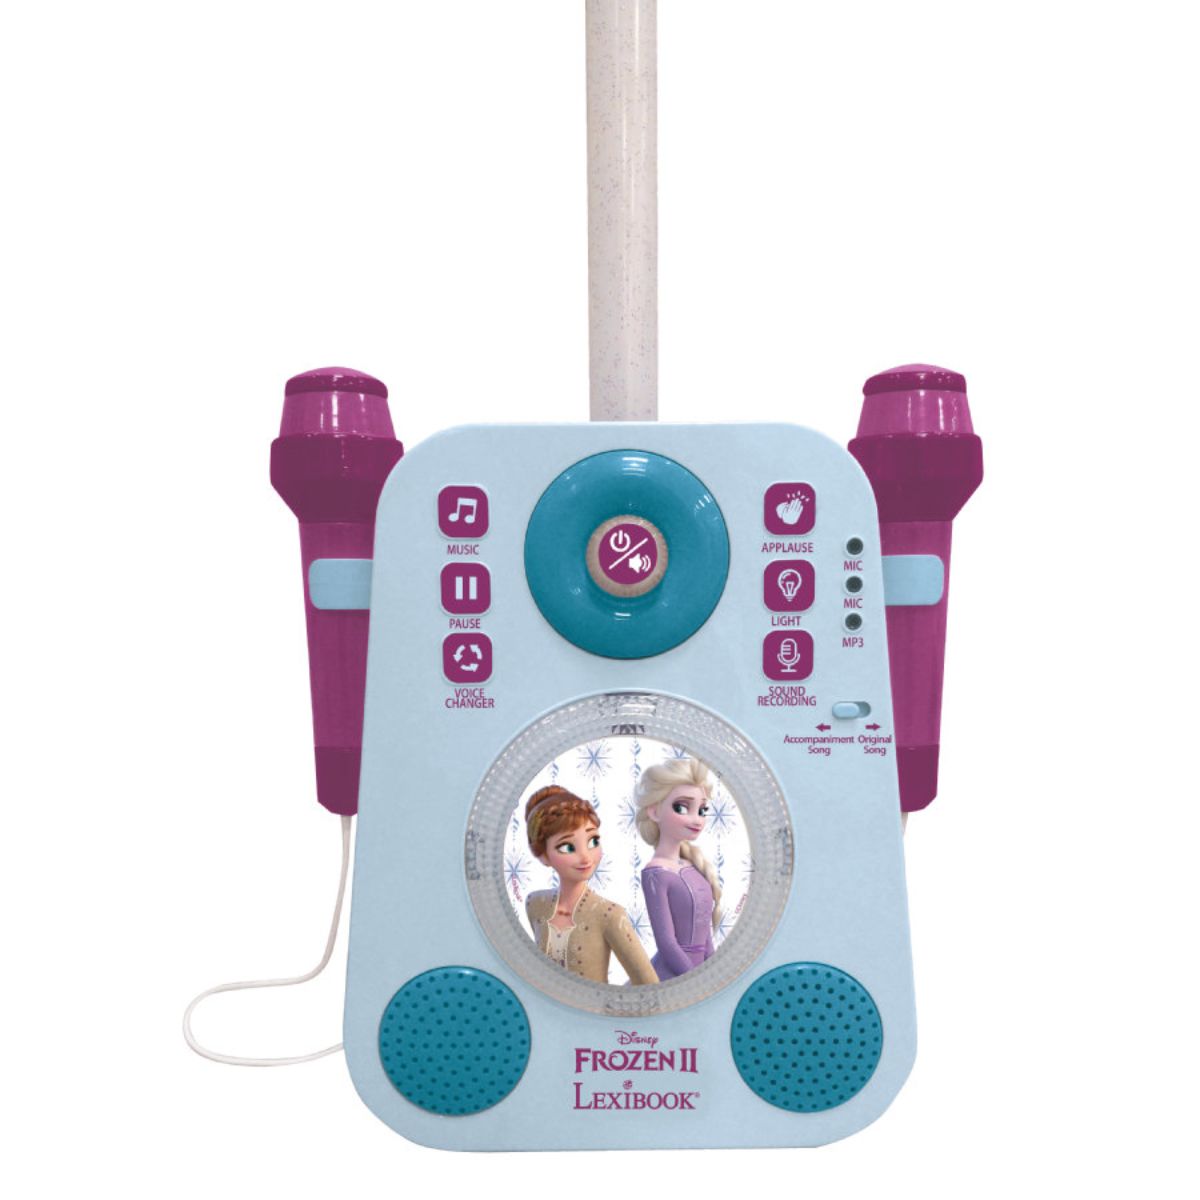 Set Karaoke portabil, Lexibook, cu 2 microfoane, sunete si lumini, Disney Frozen 2 Lexibook imagine noua